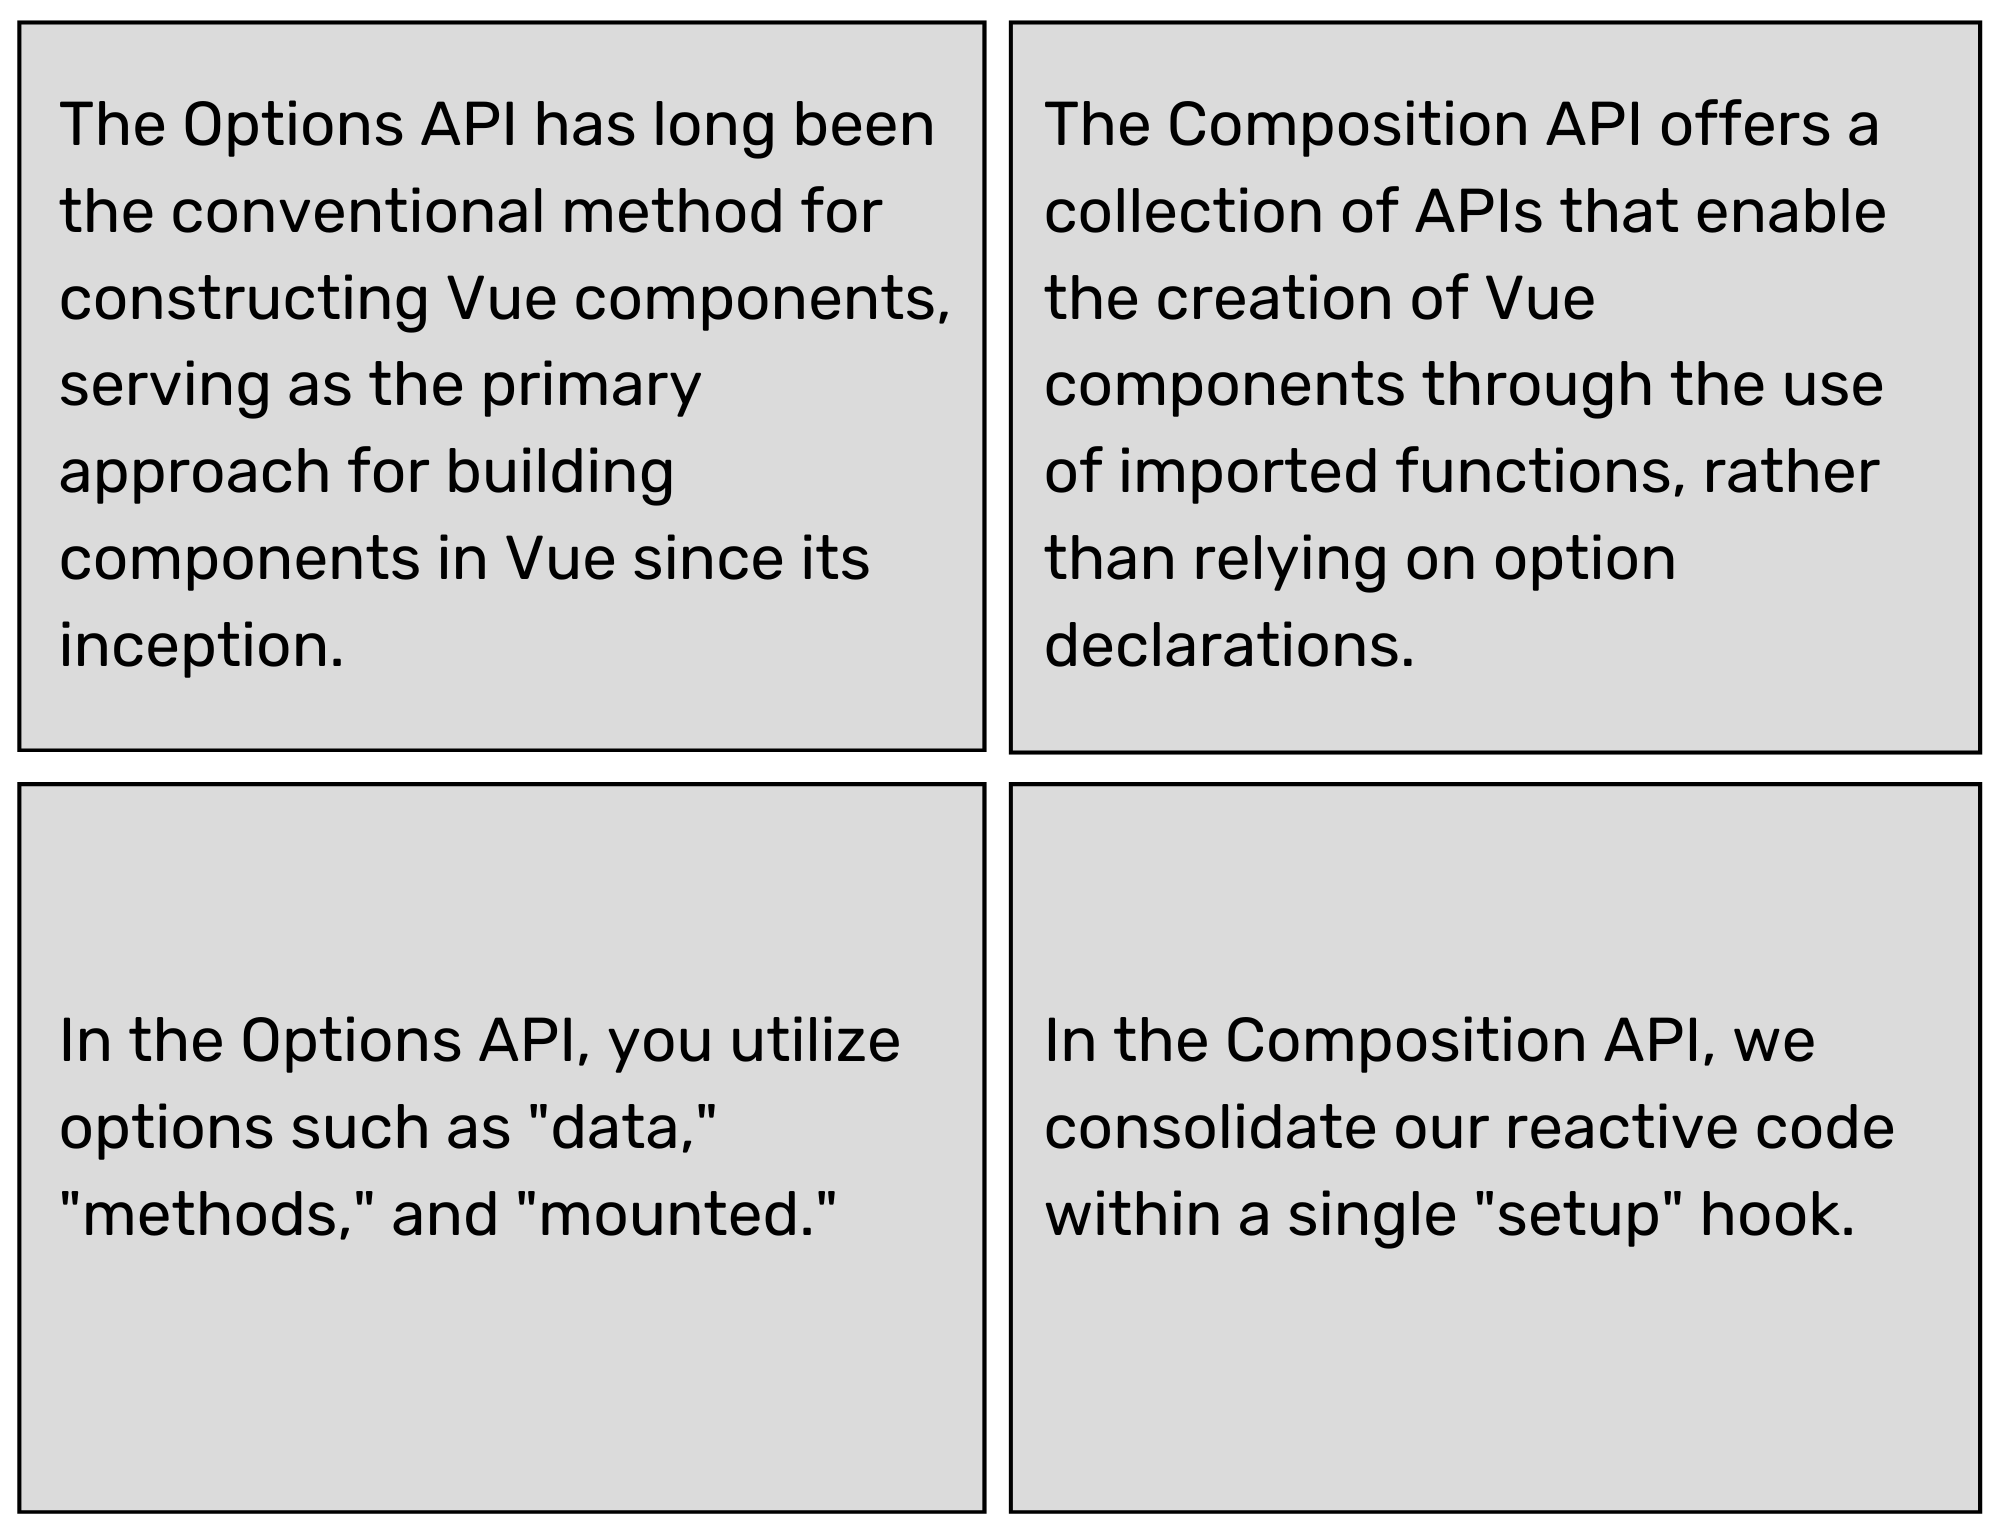 option-api-vs-composition-api